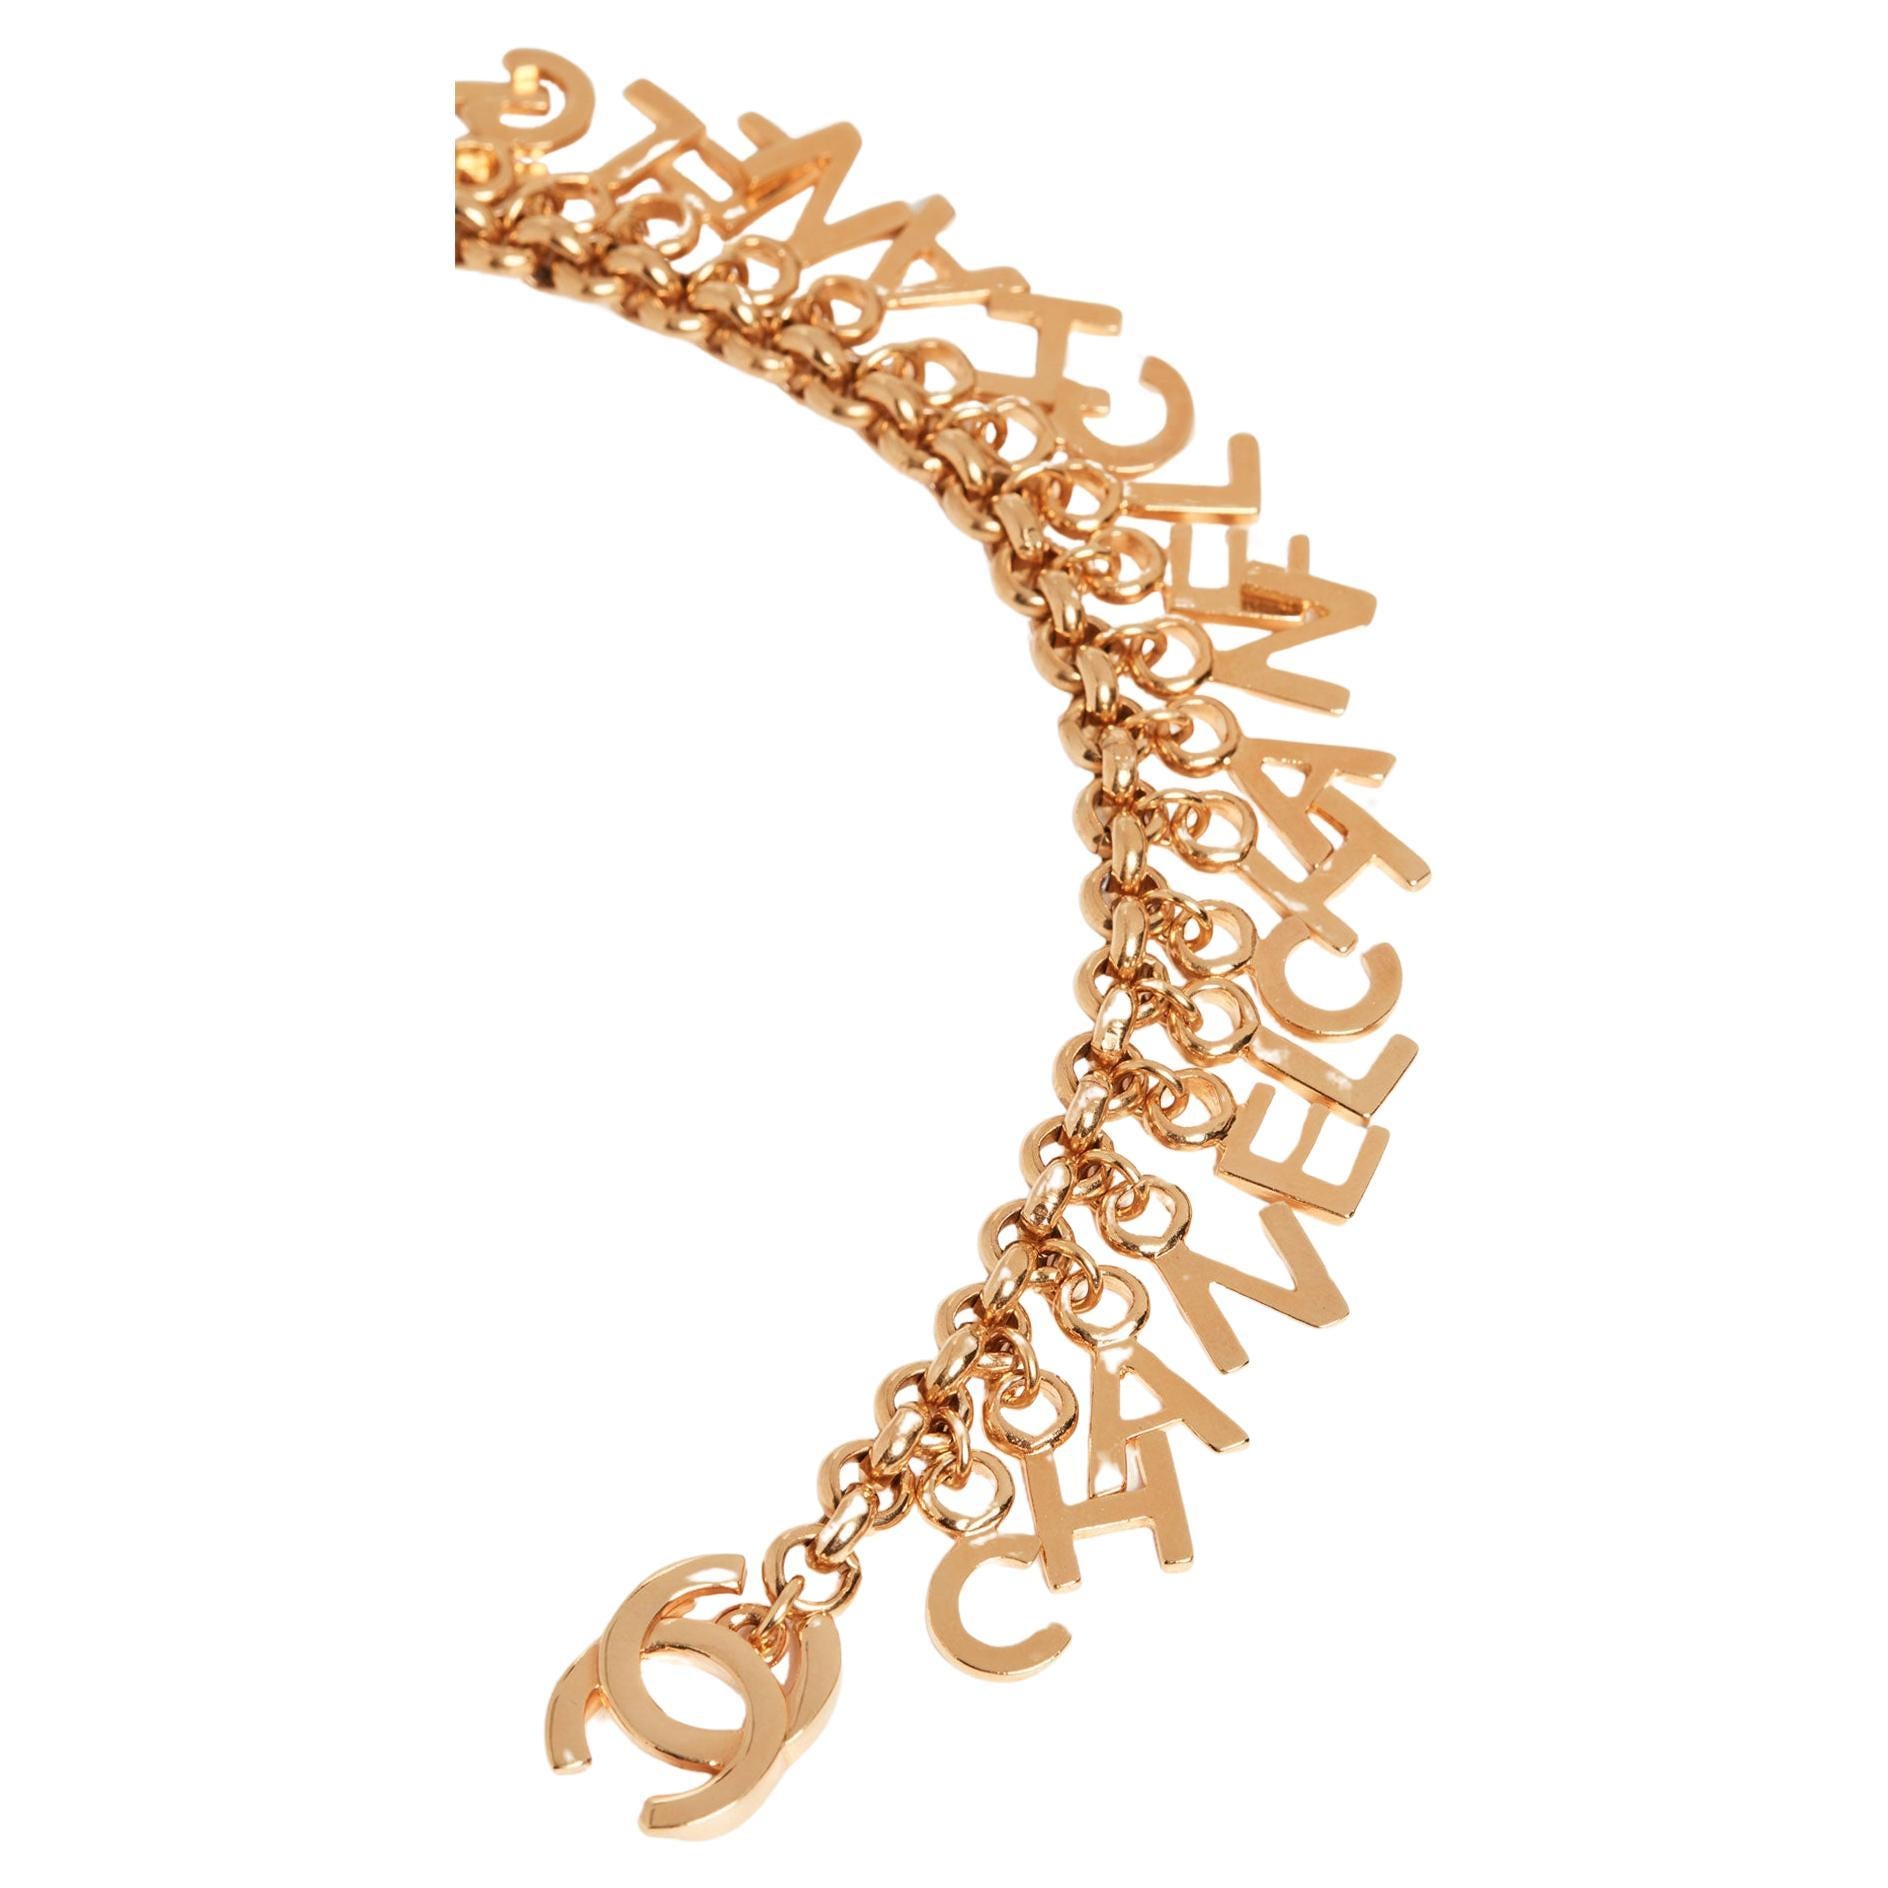 Chanel Vintage 90's Logo CC Turnlock Gold Choker Necklace Rare

vintage des années 90
Métal de couleur or
Finition du métal : haute brillance
Mesures : Longueur de la chaîne 16